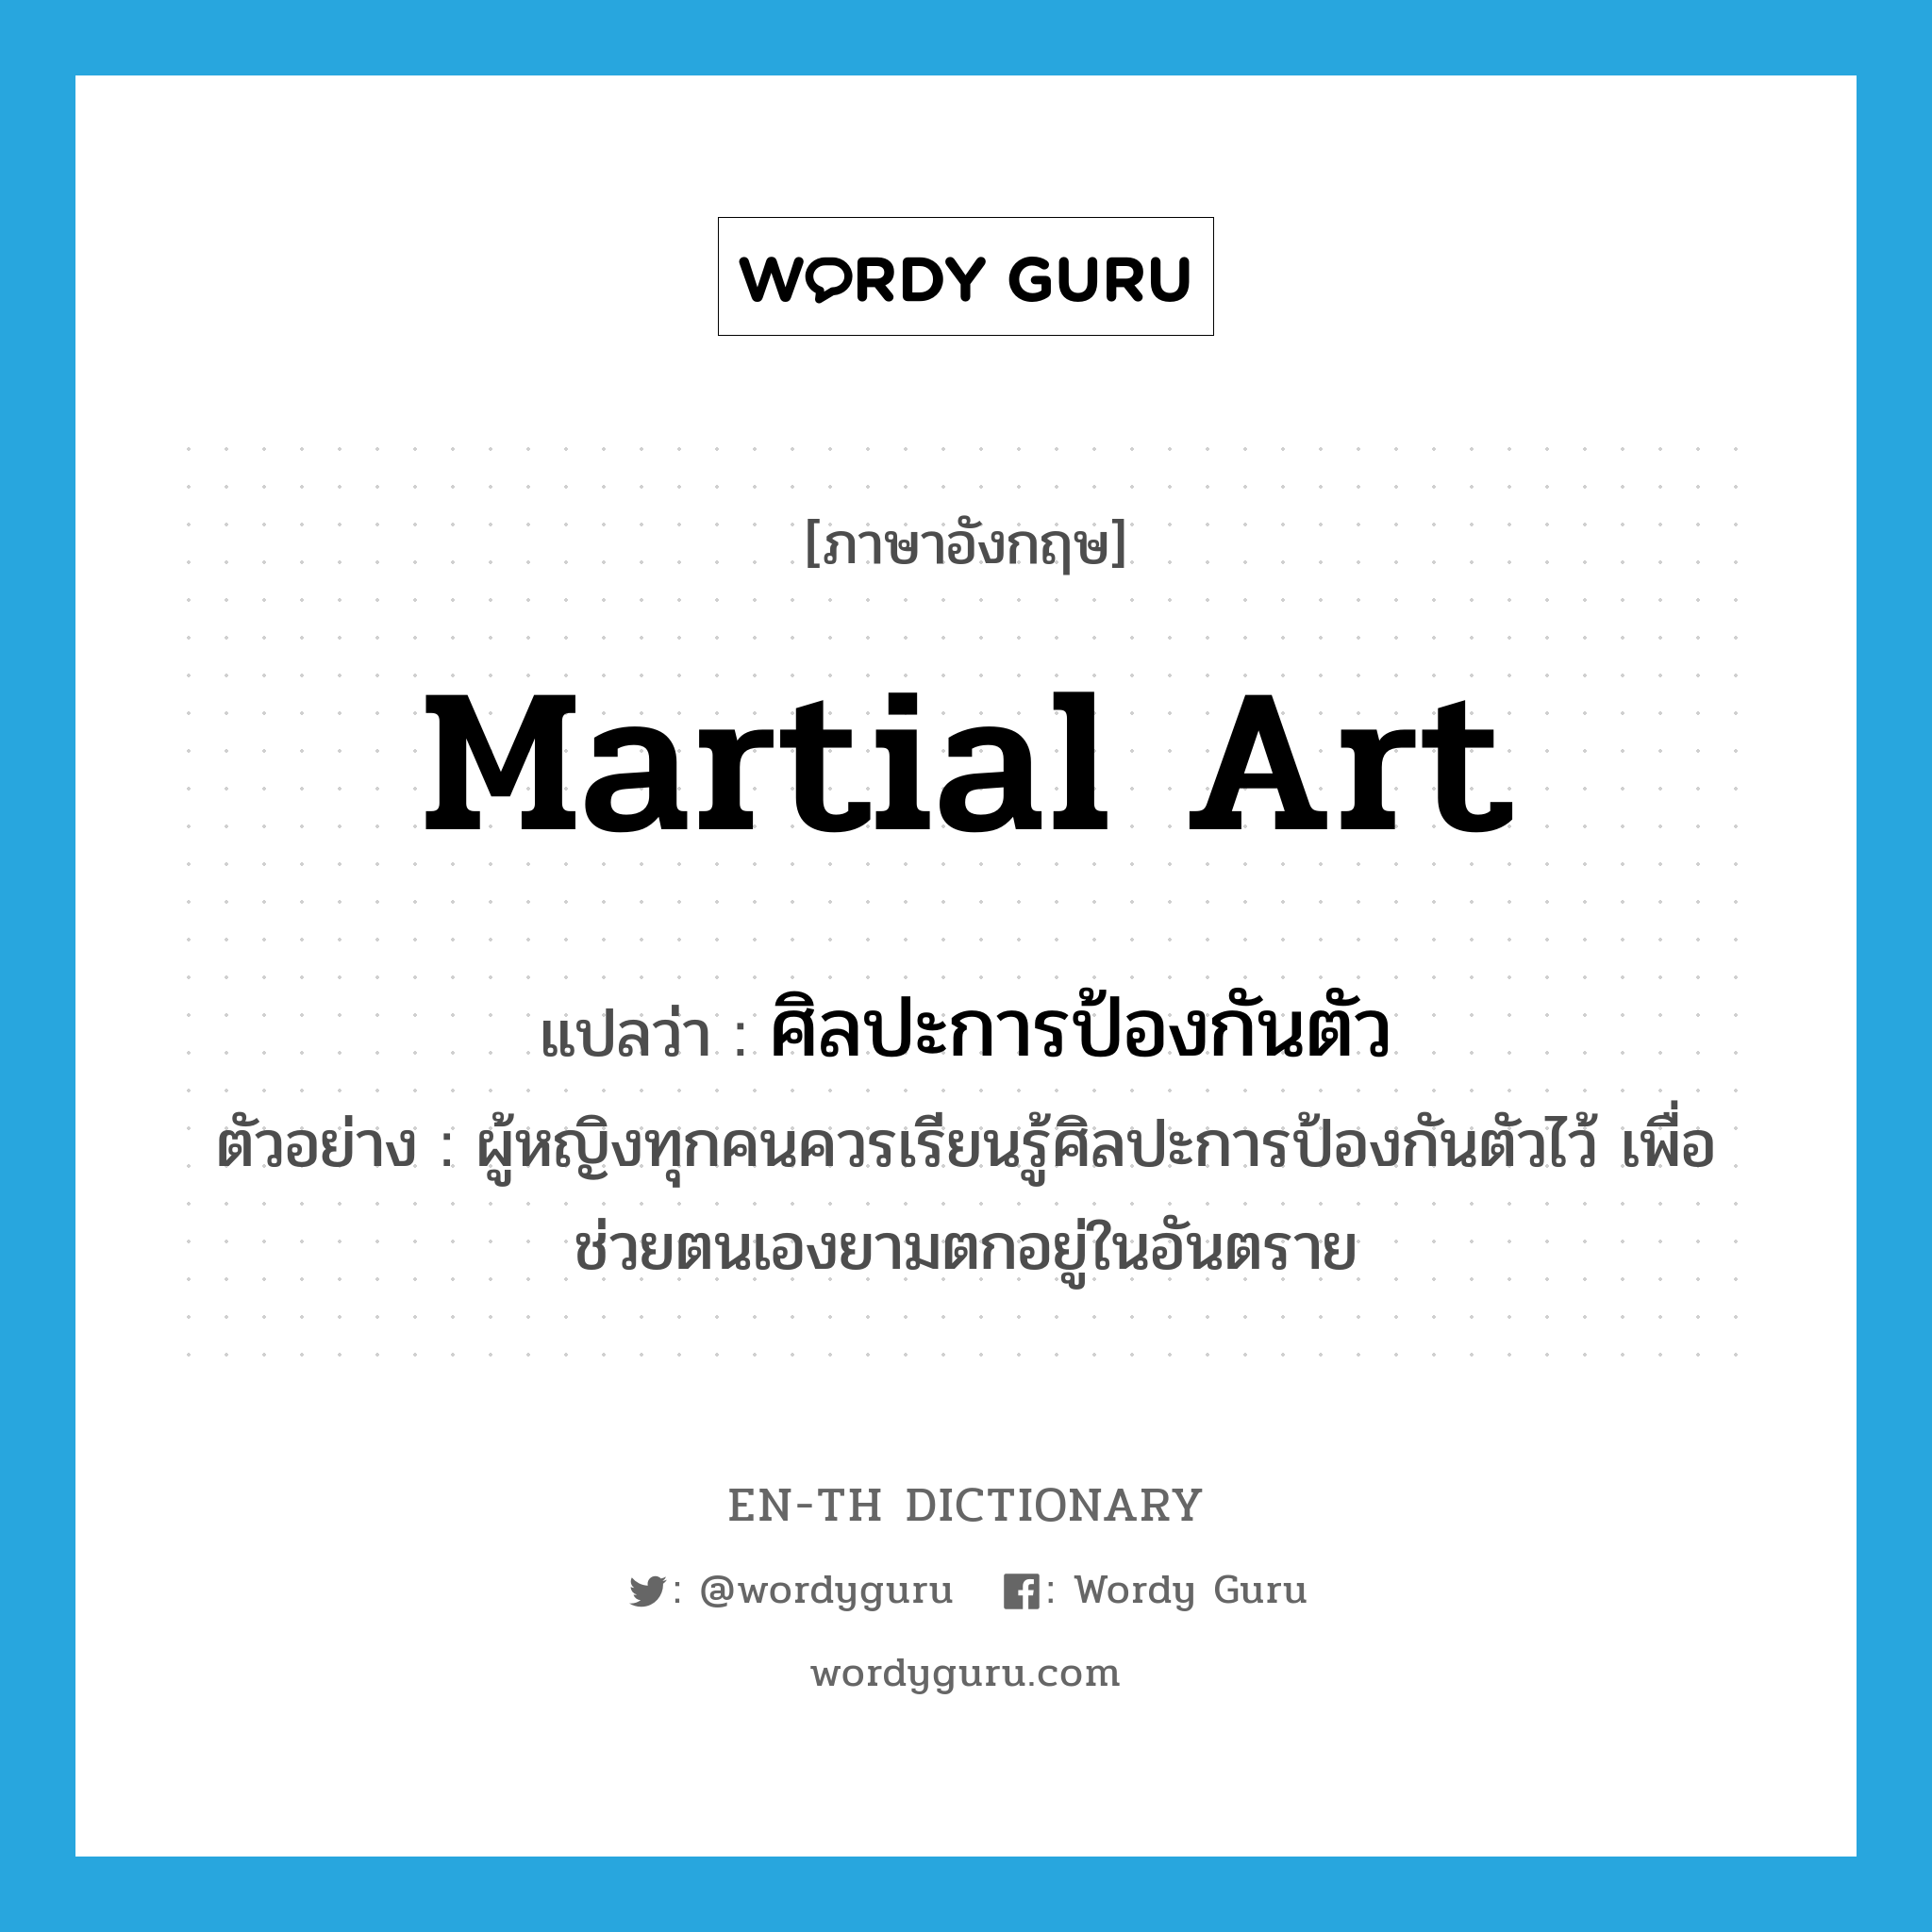 martial art แปลว่า?, คำศัพท์ภาษาอังกฤษ martial art แปลว่า ศิลปะการป้องกันตัว ประเภท N ตัวอย่าง ผู้หญิงทุกคนควรเรียนรู้ศิลปะการป้องกันตัวไว้ เพื่อช่วยตนเองยามตกอยู่ในอันตราย หมวด N